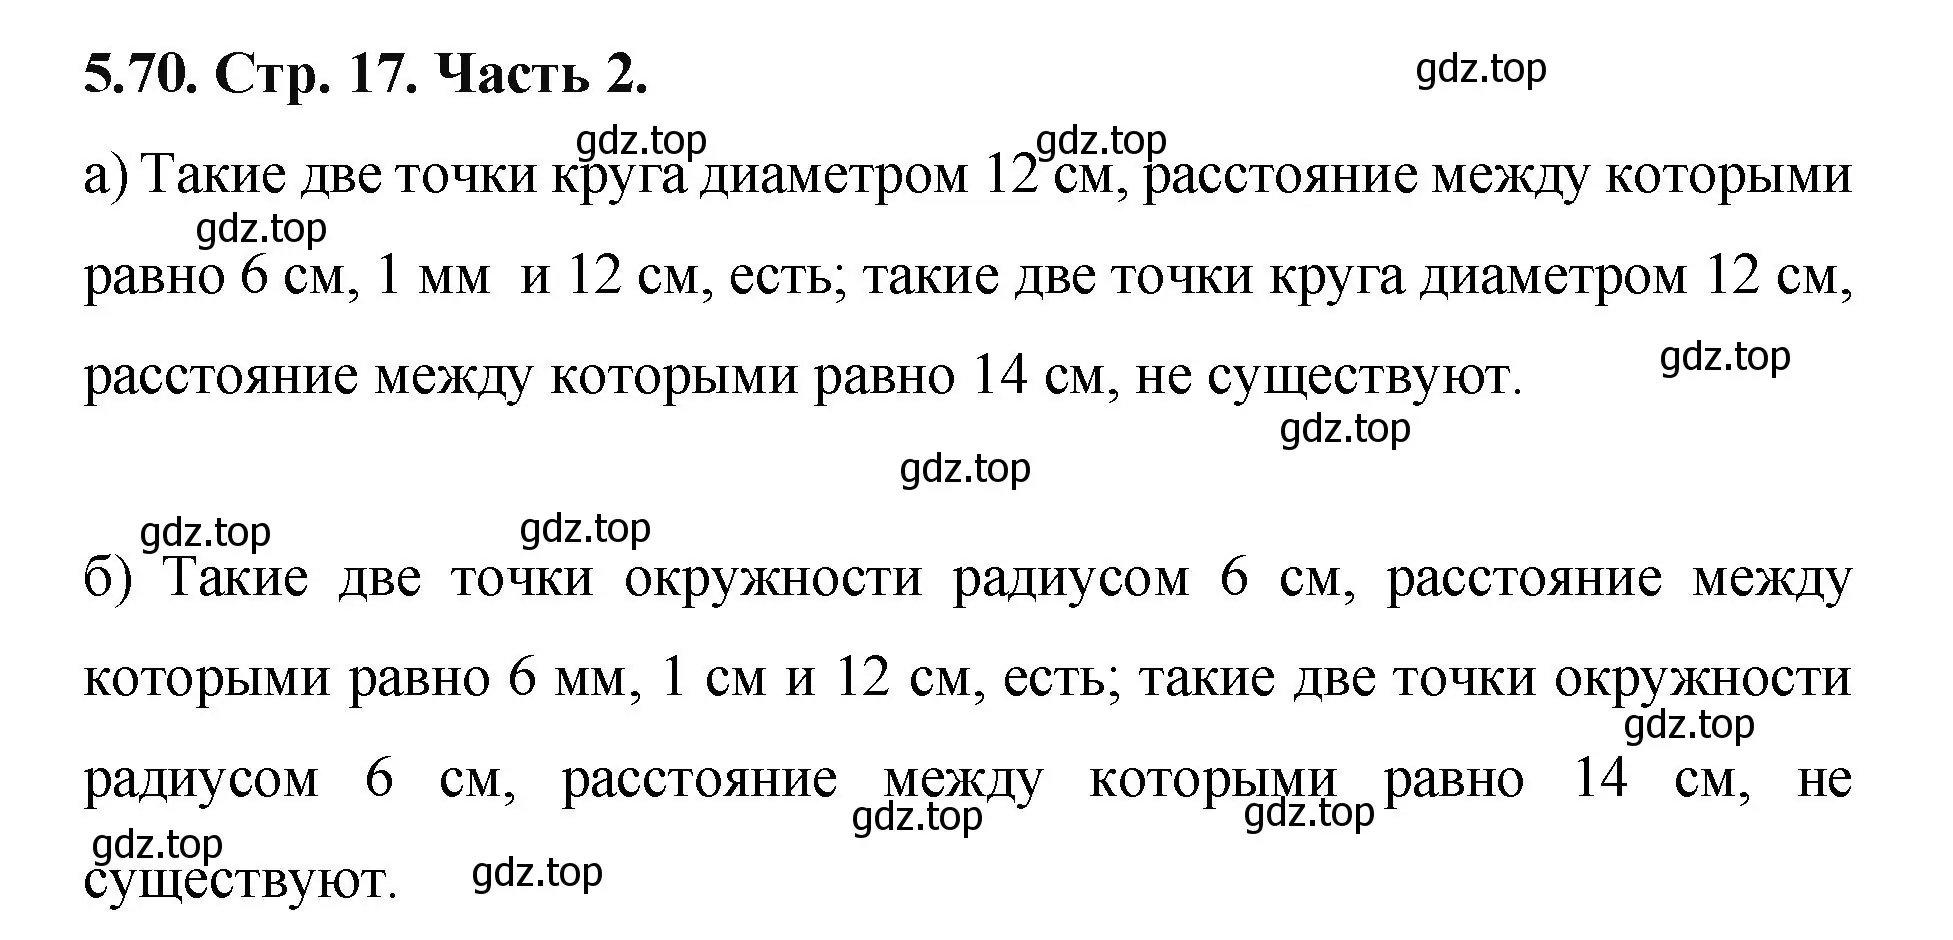 Решение номер 5.70 (страница 17) гдз по математике 5 класс Виленкин, Жохов, учебник 2 часть